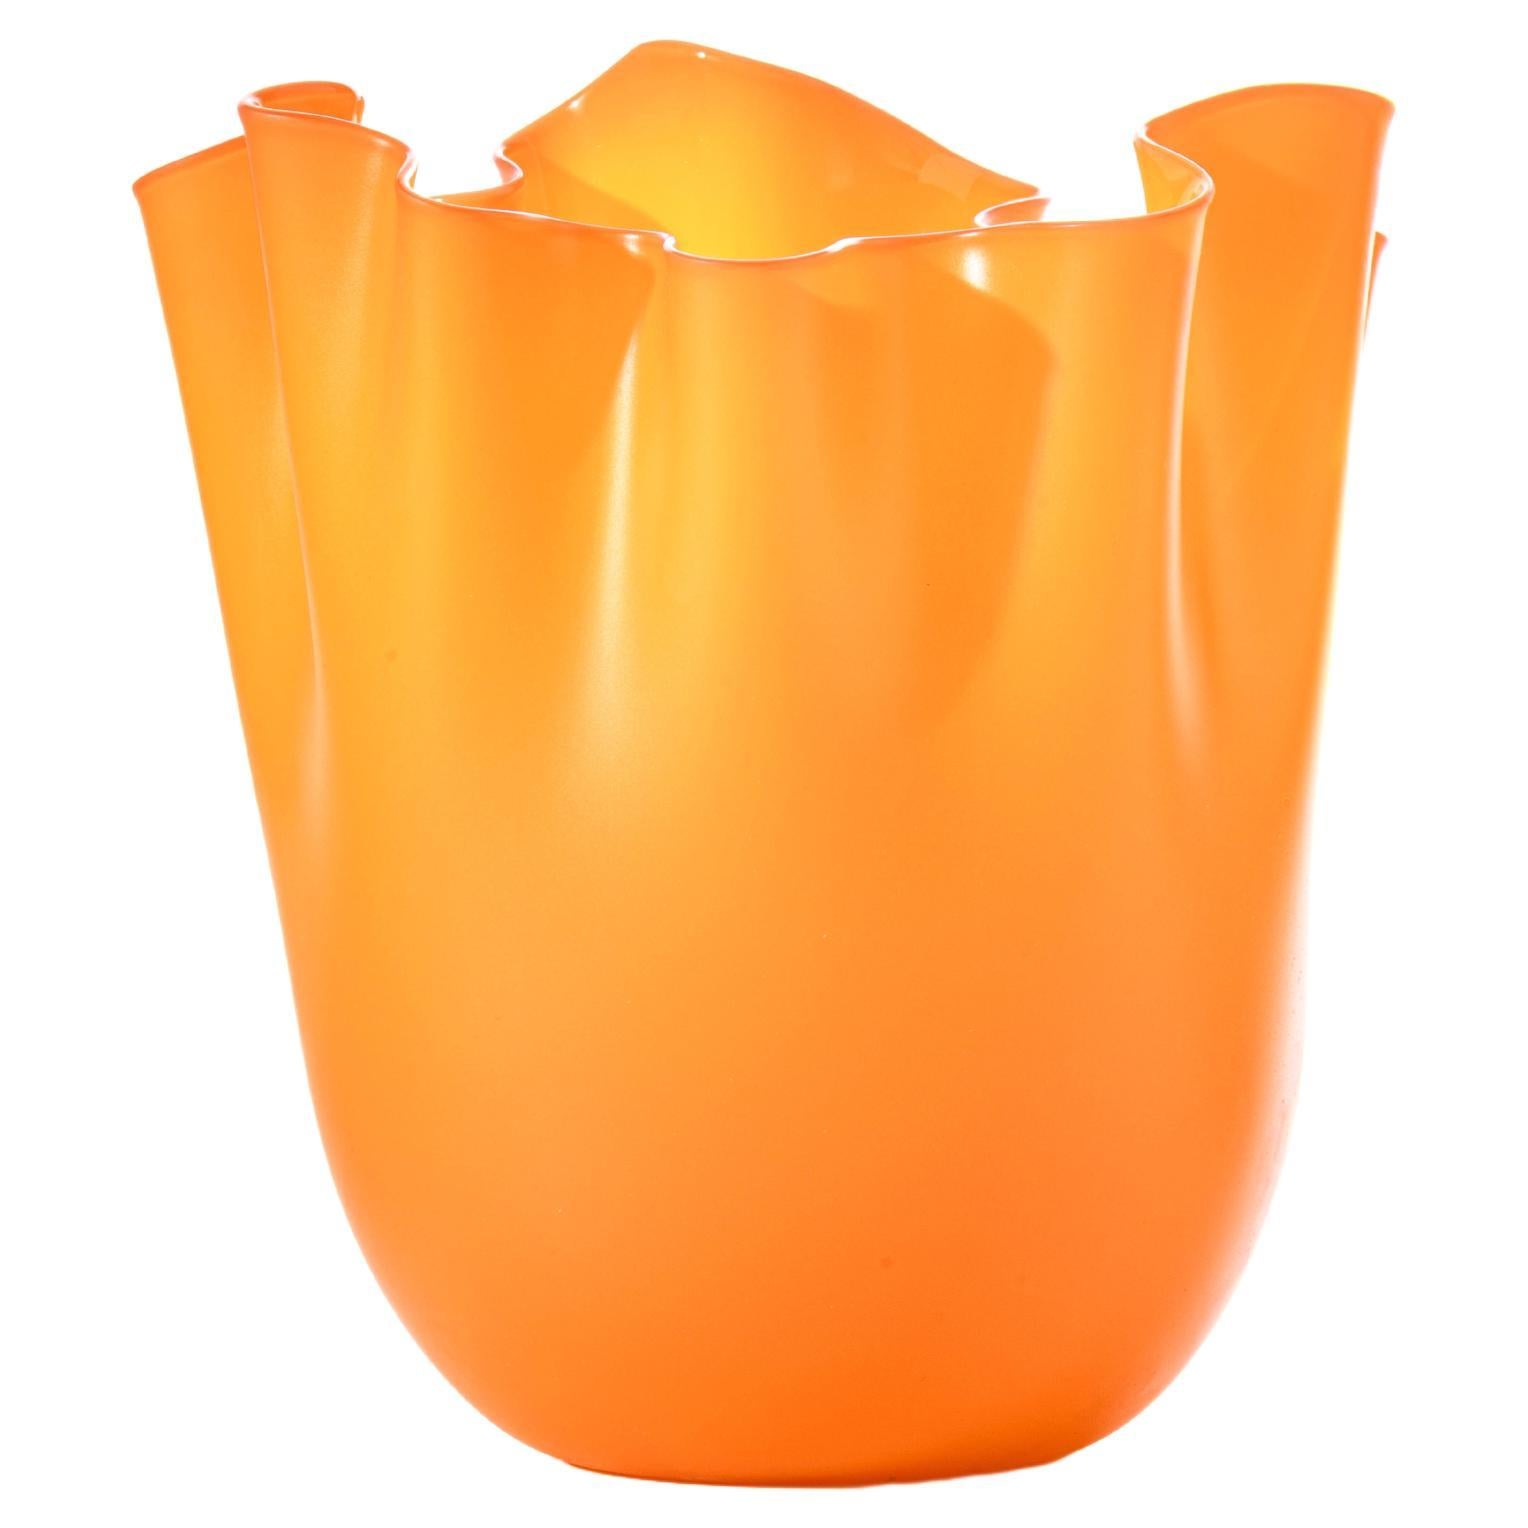 Fazzoletto Sabbiato Large Glass Vase in Orange by Fulvio Bianconi and Venini